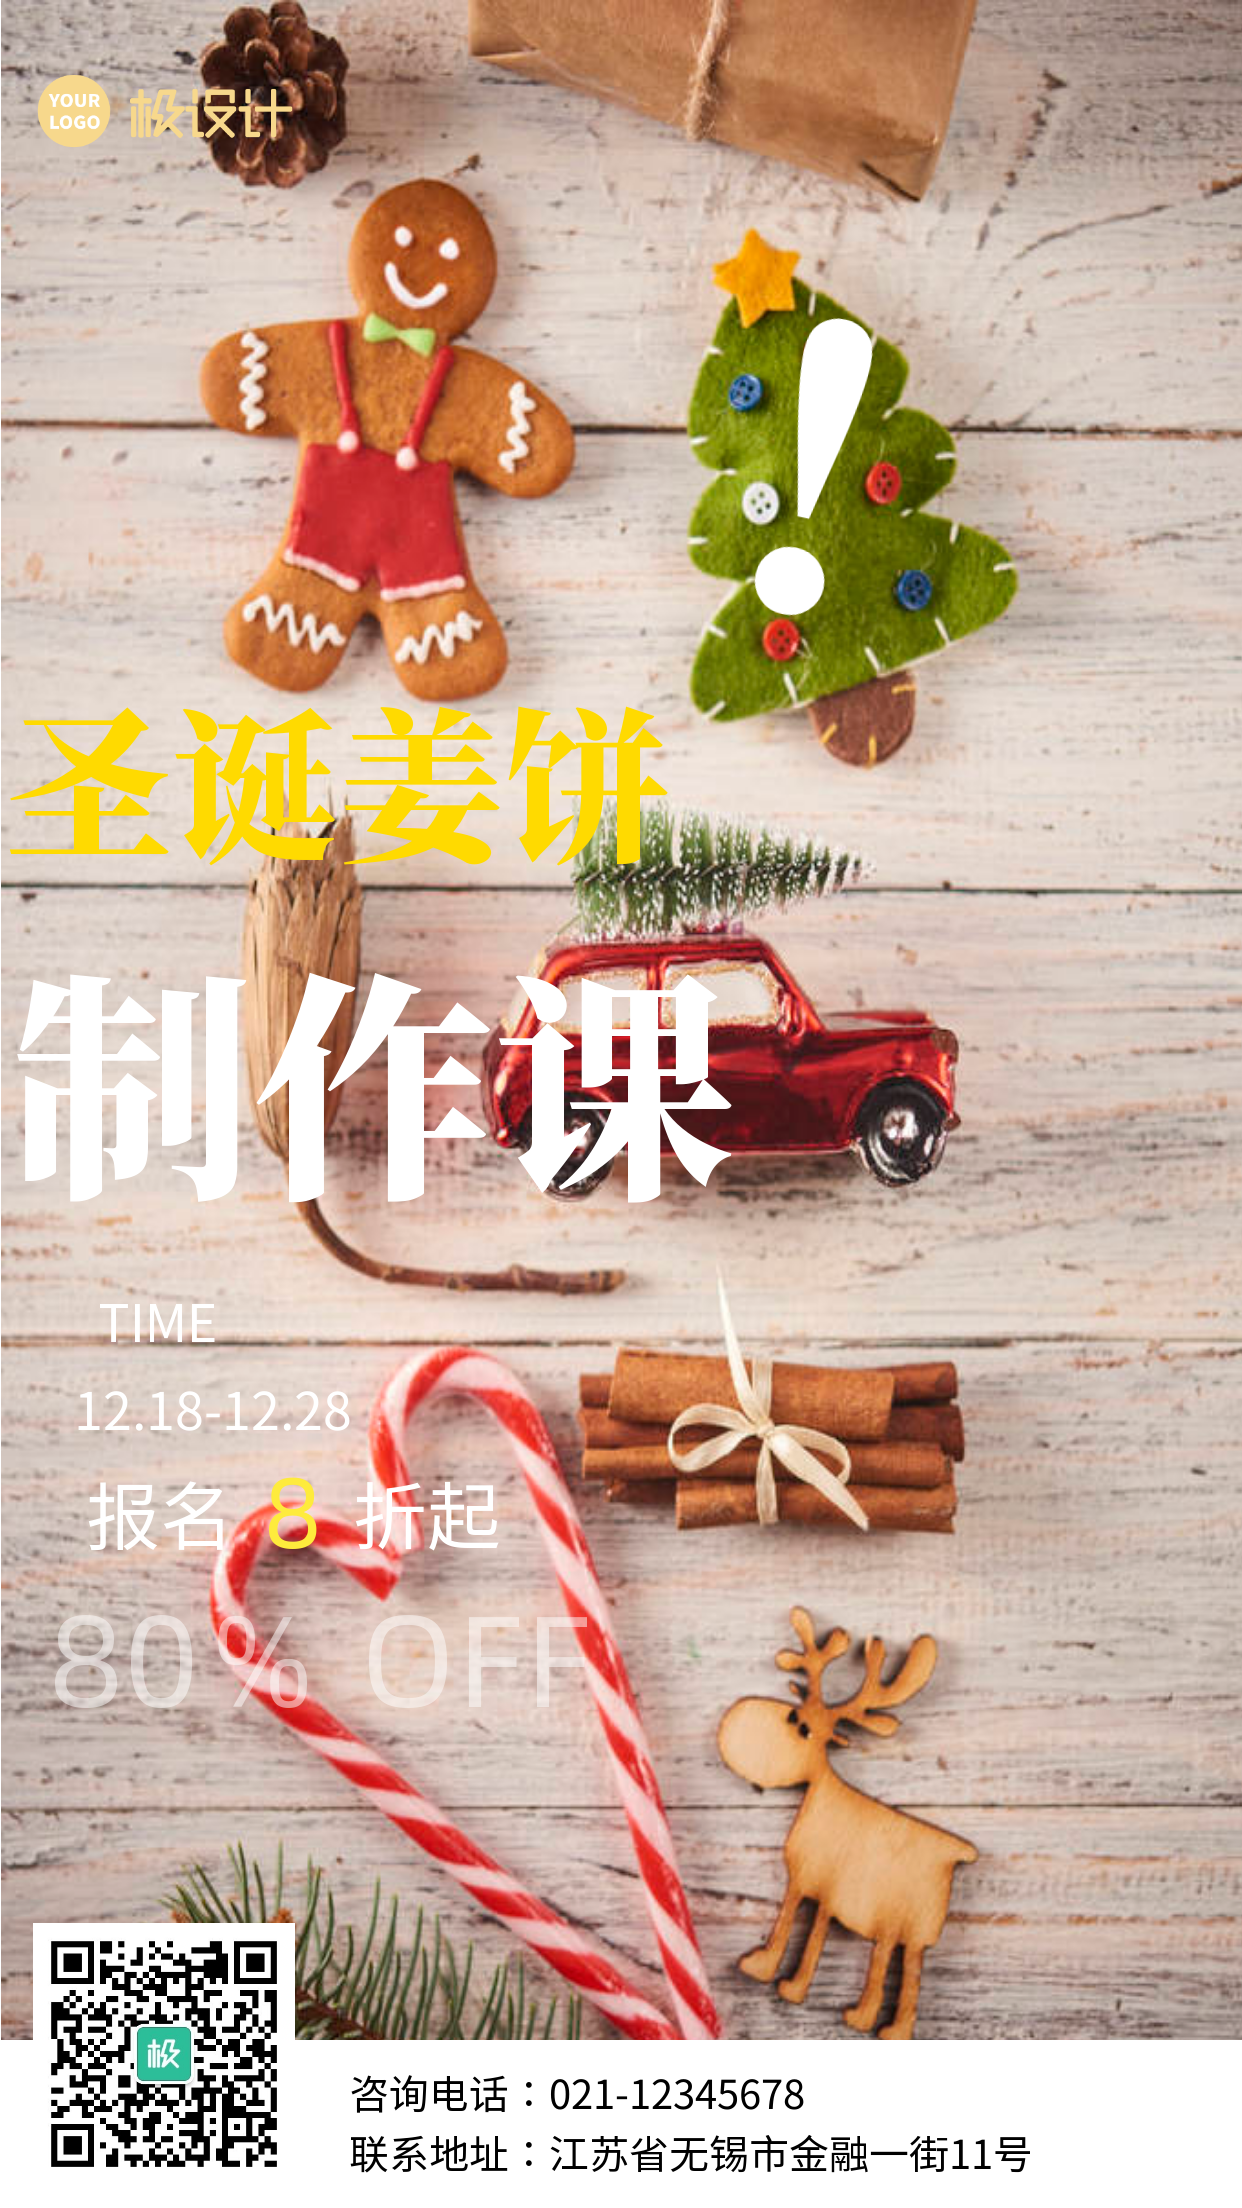 简约风格圣诞姜饼制作课宣传手机海报